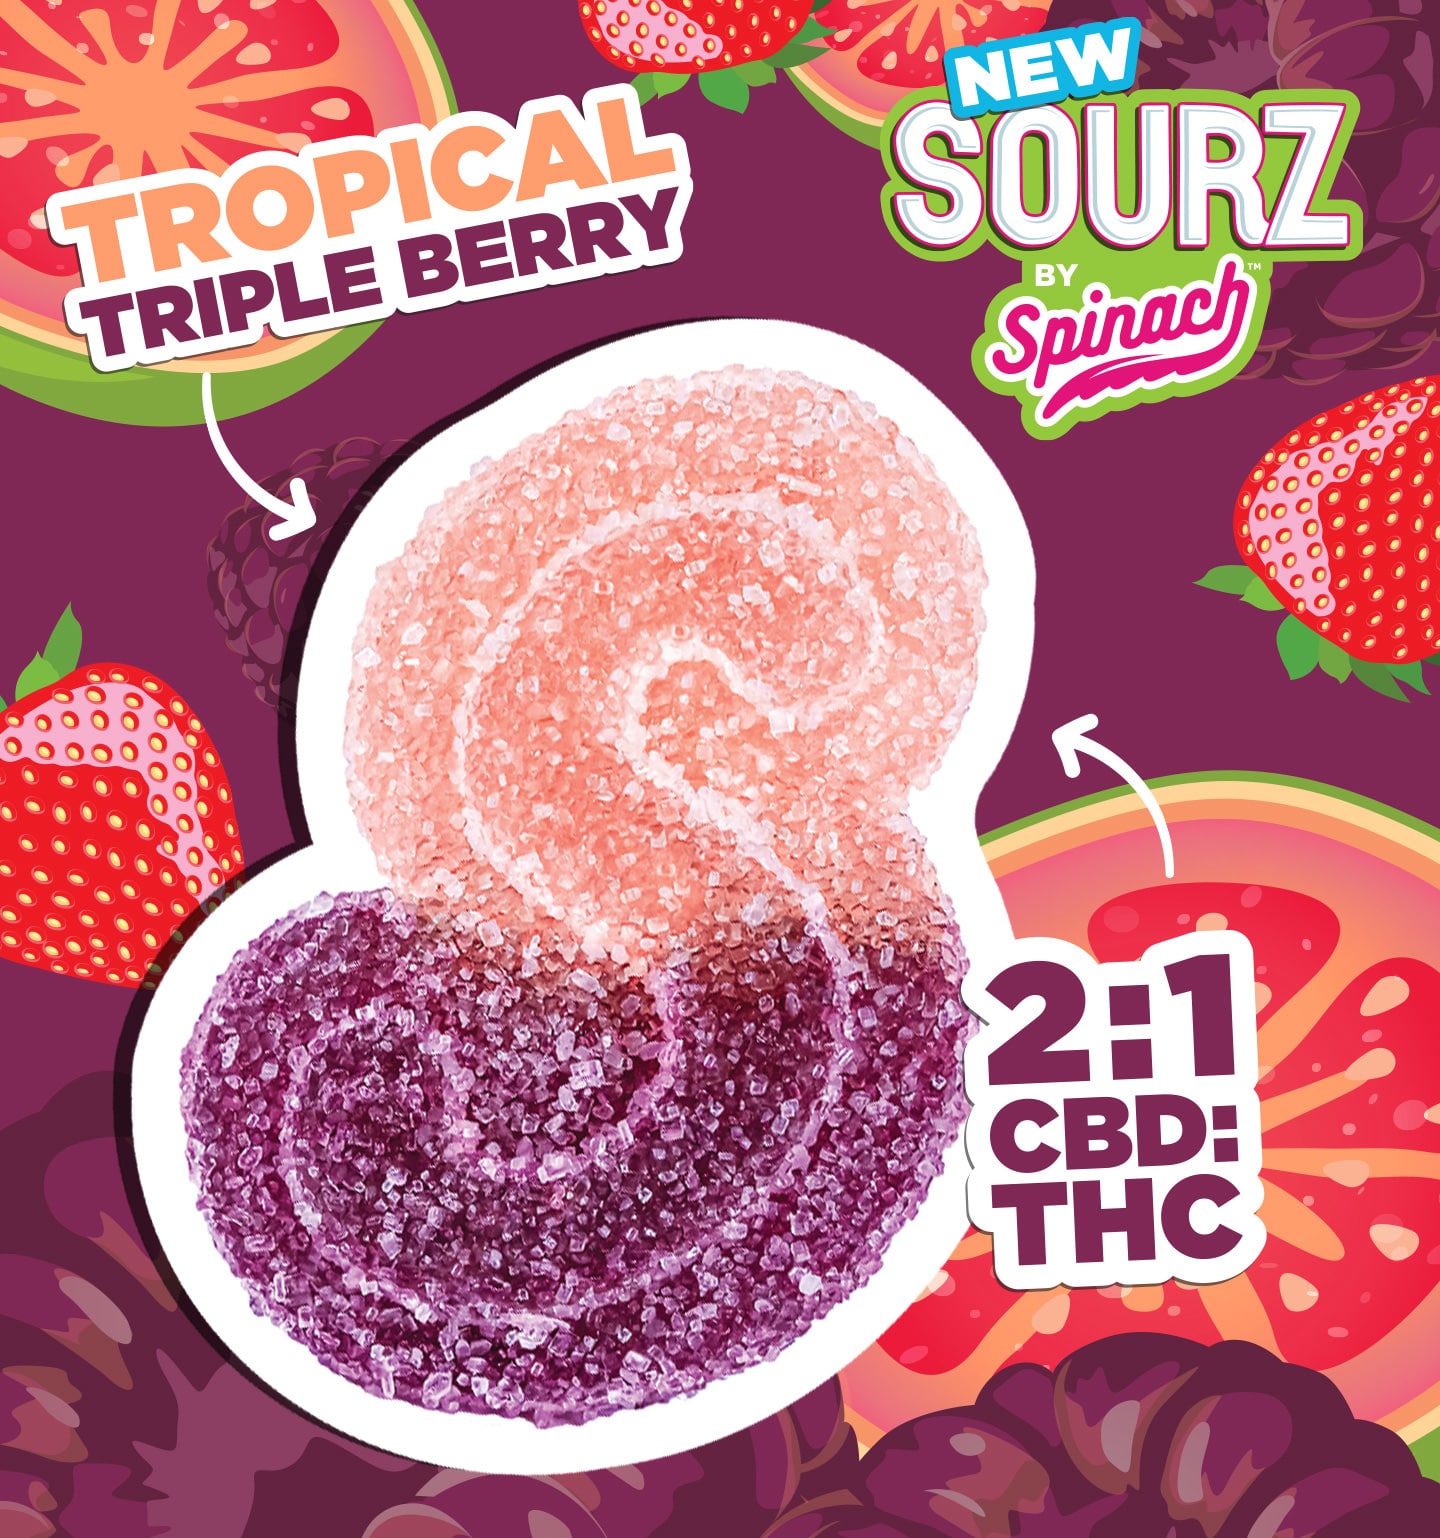 Tropical Triple Berry - Spinach Cannabis